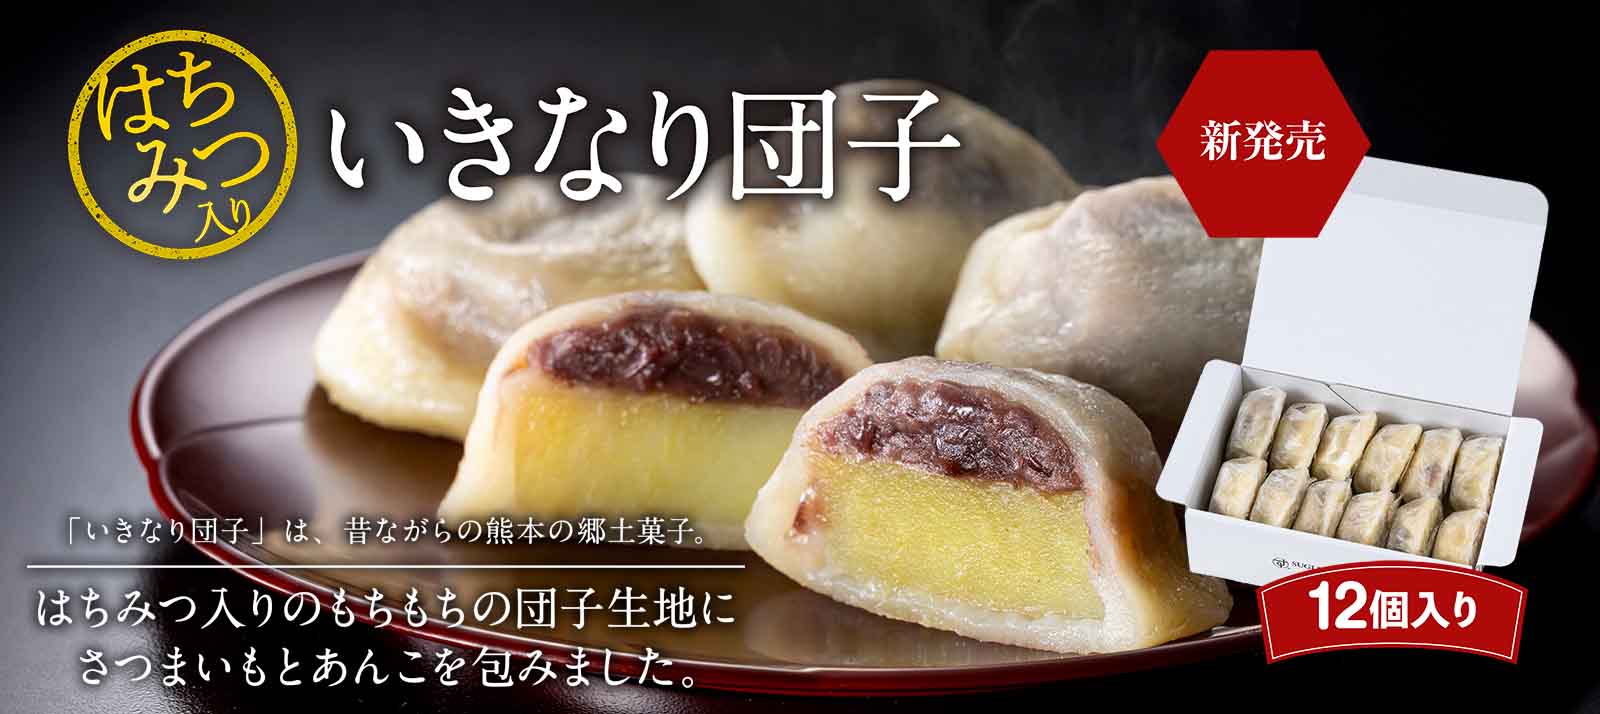 New release of honey-flavored dango